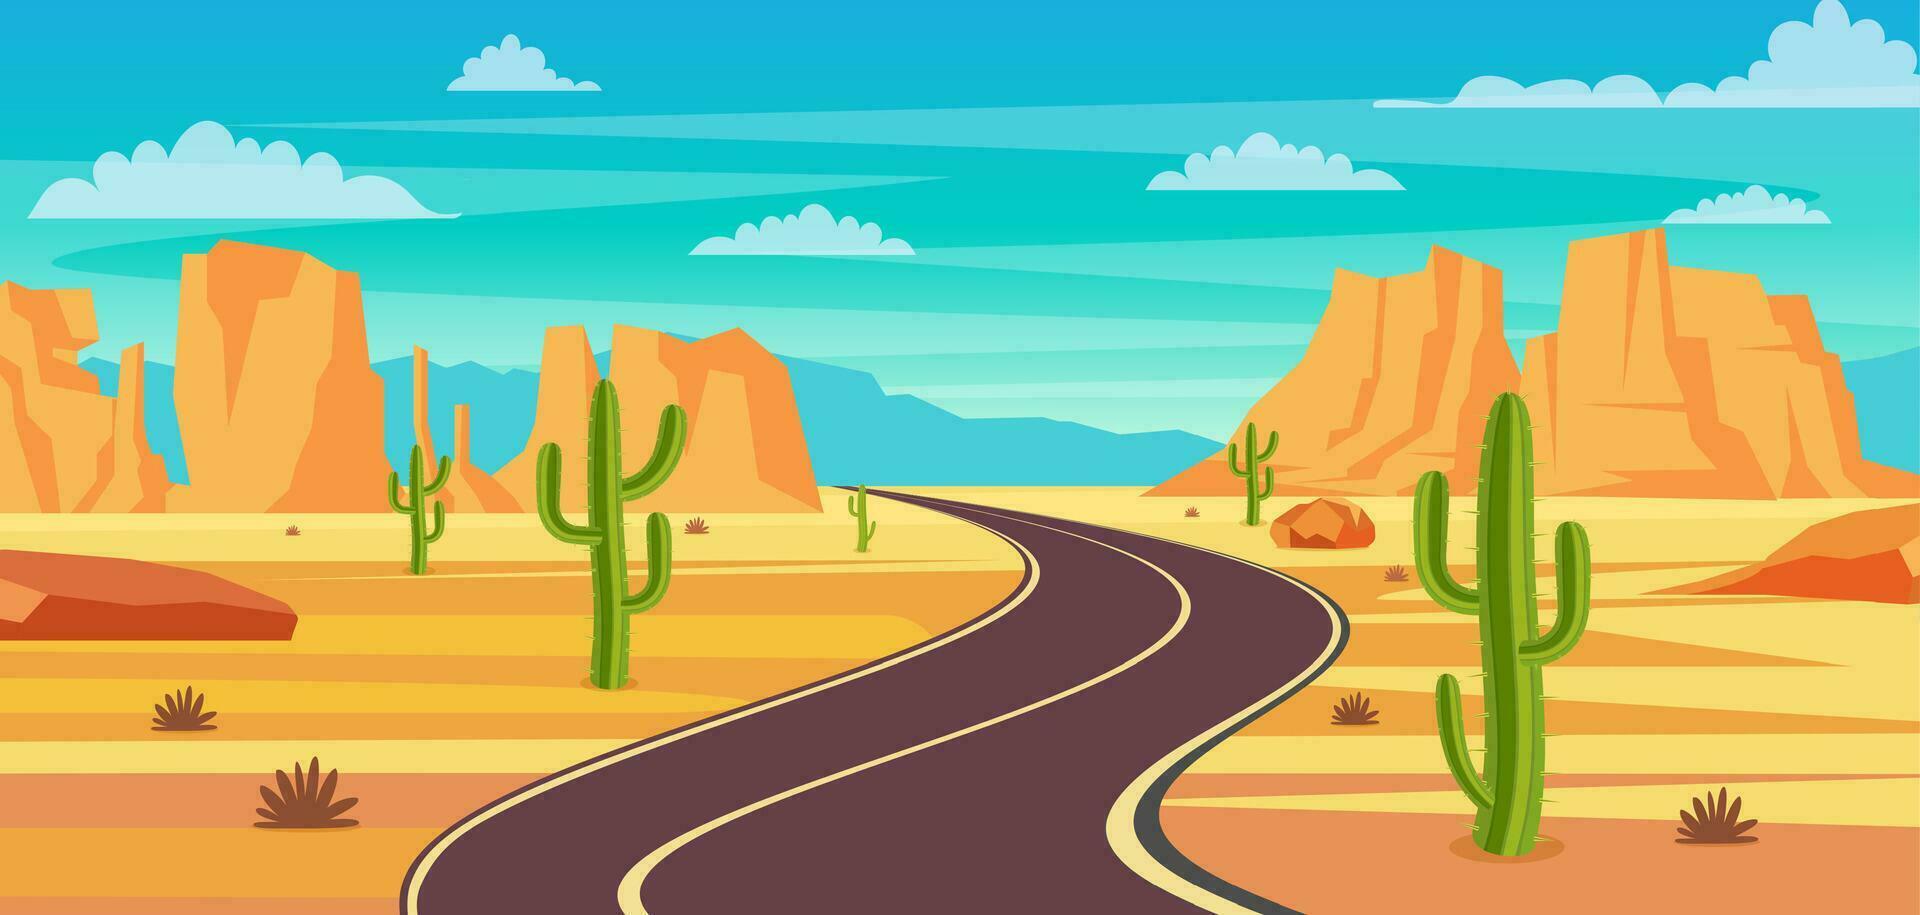 vacío autopista la carretera en desierto. arenoso Desierto paisaje con camino, rocas y cactus verano occidental americano paisaje. autopista en Arizona o mexico caliente arena. vector ilustración en plano estilo